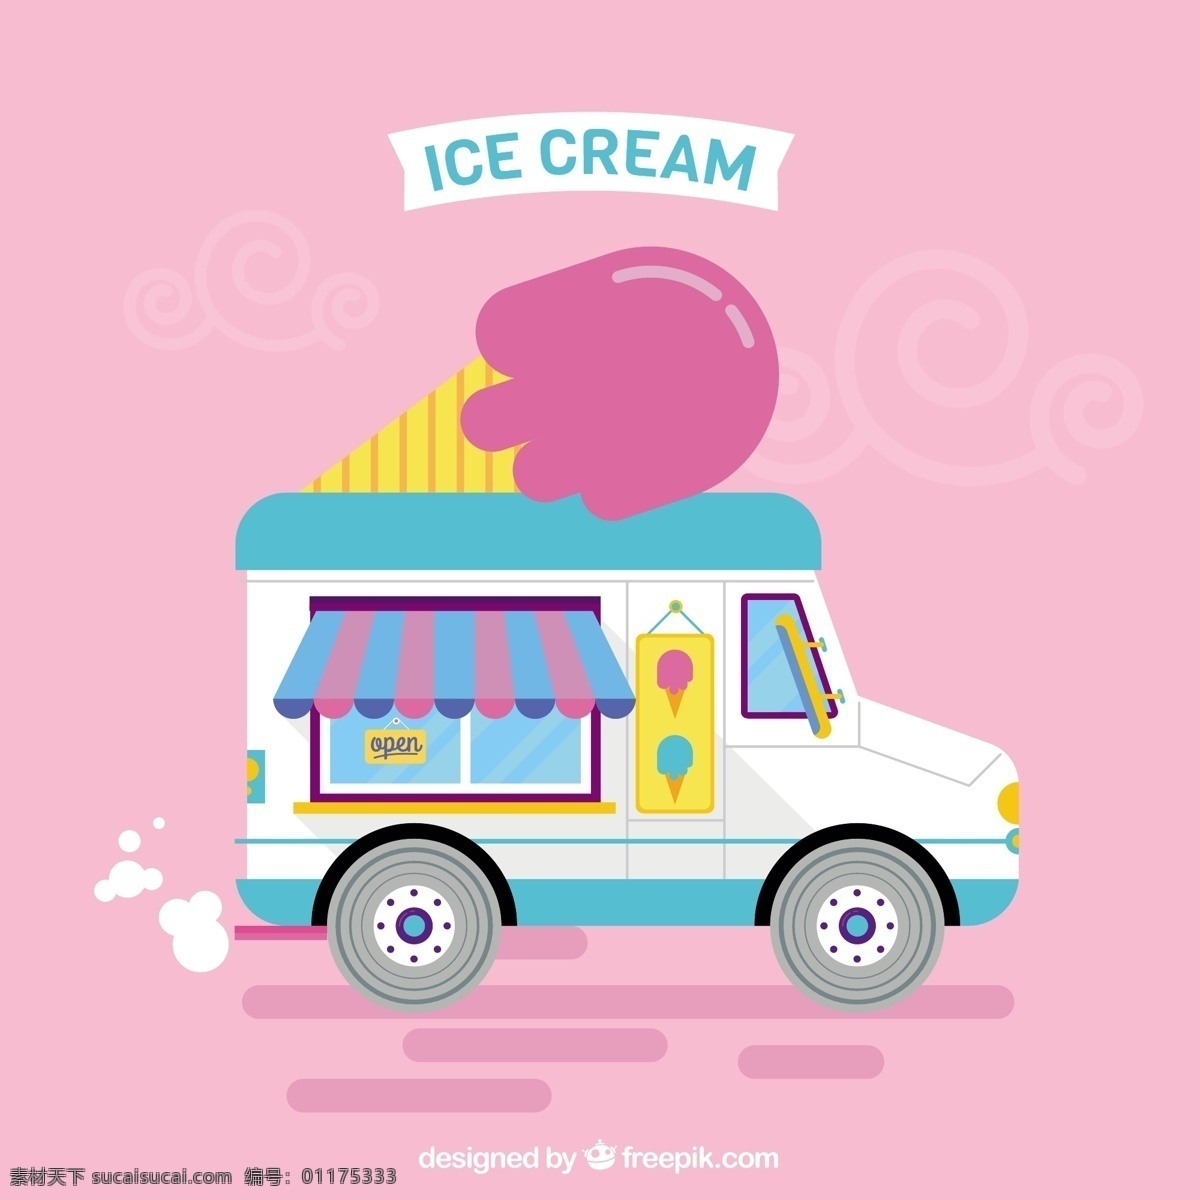 粉红色 背景 冰淇淋 车 食物 夏天 粉色 卡车 平板 冰 甜 甜点 打印 奶油 吃 季节 收集 美味 味道 准备 夏季 冷却